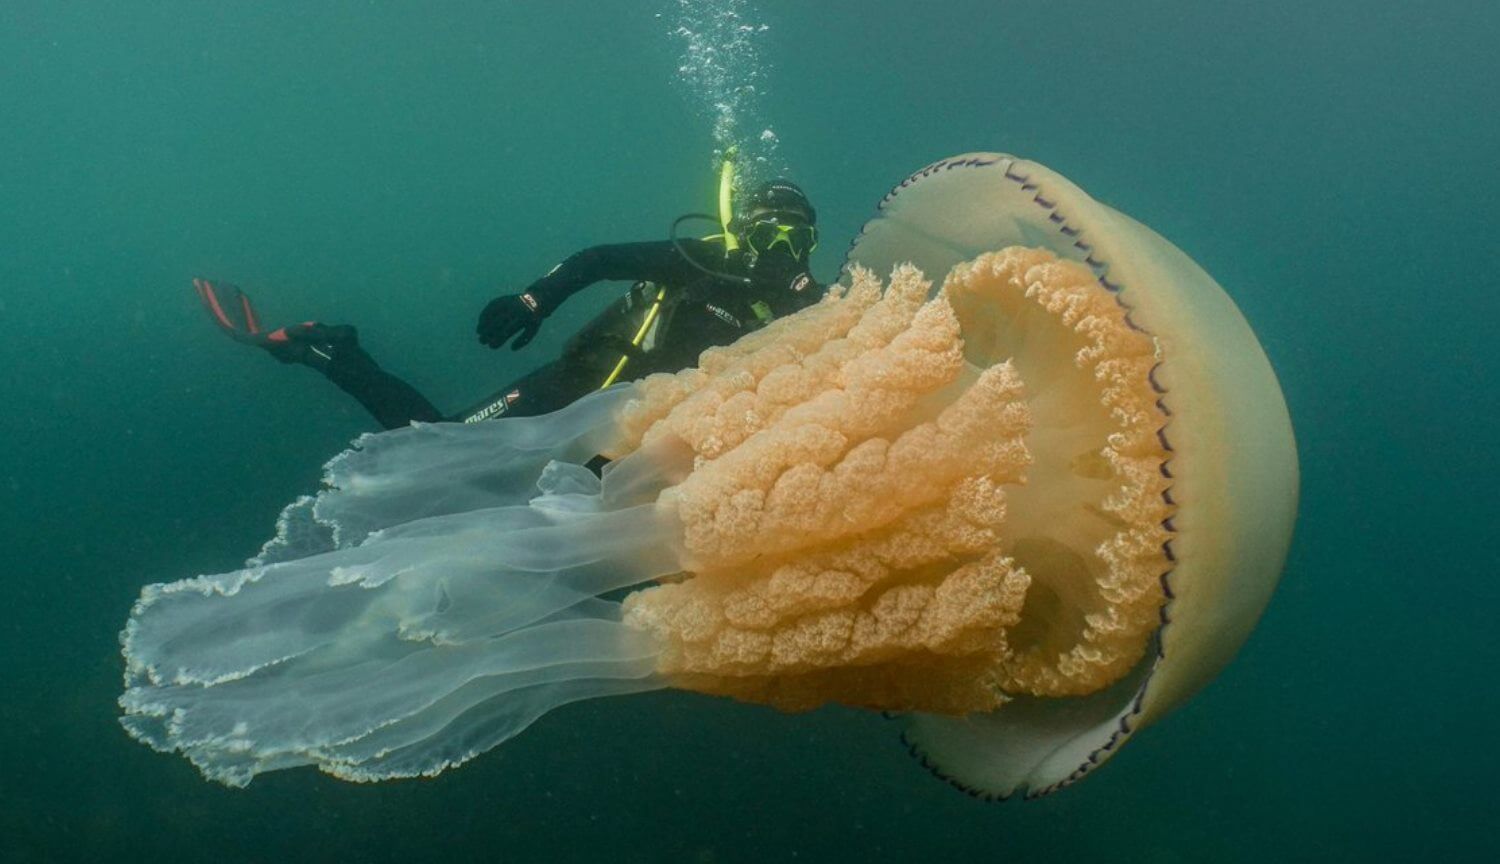 #video | Nel regno unito hanno trovato una gigantesca medusa a misura d'uomo